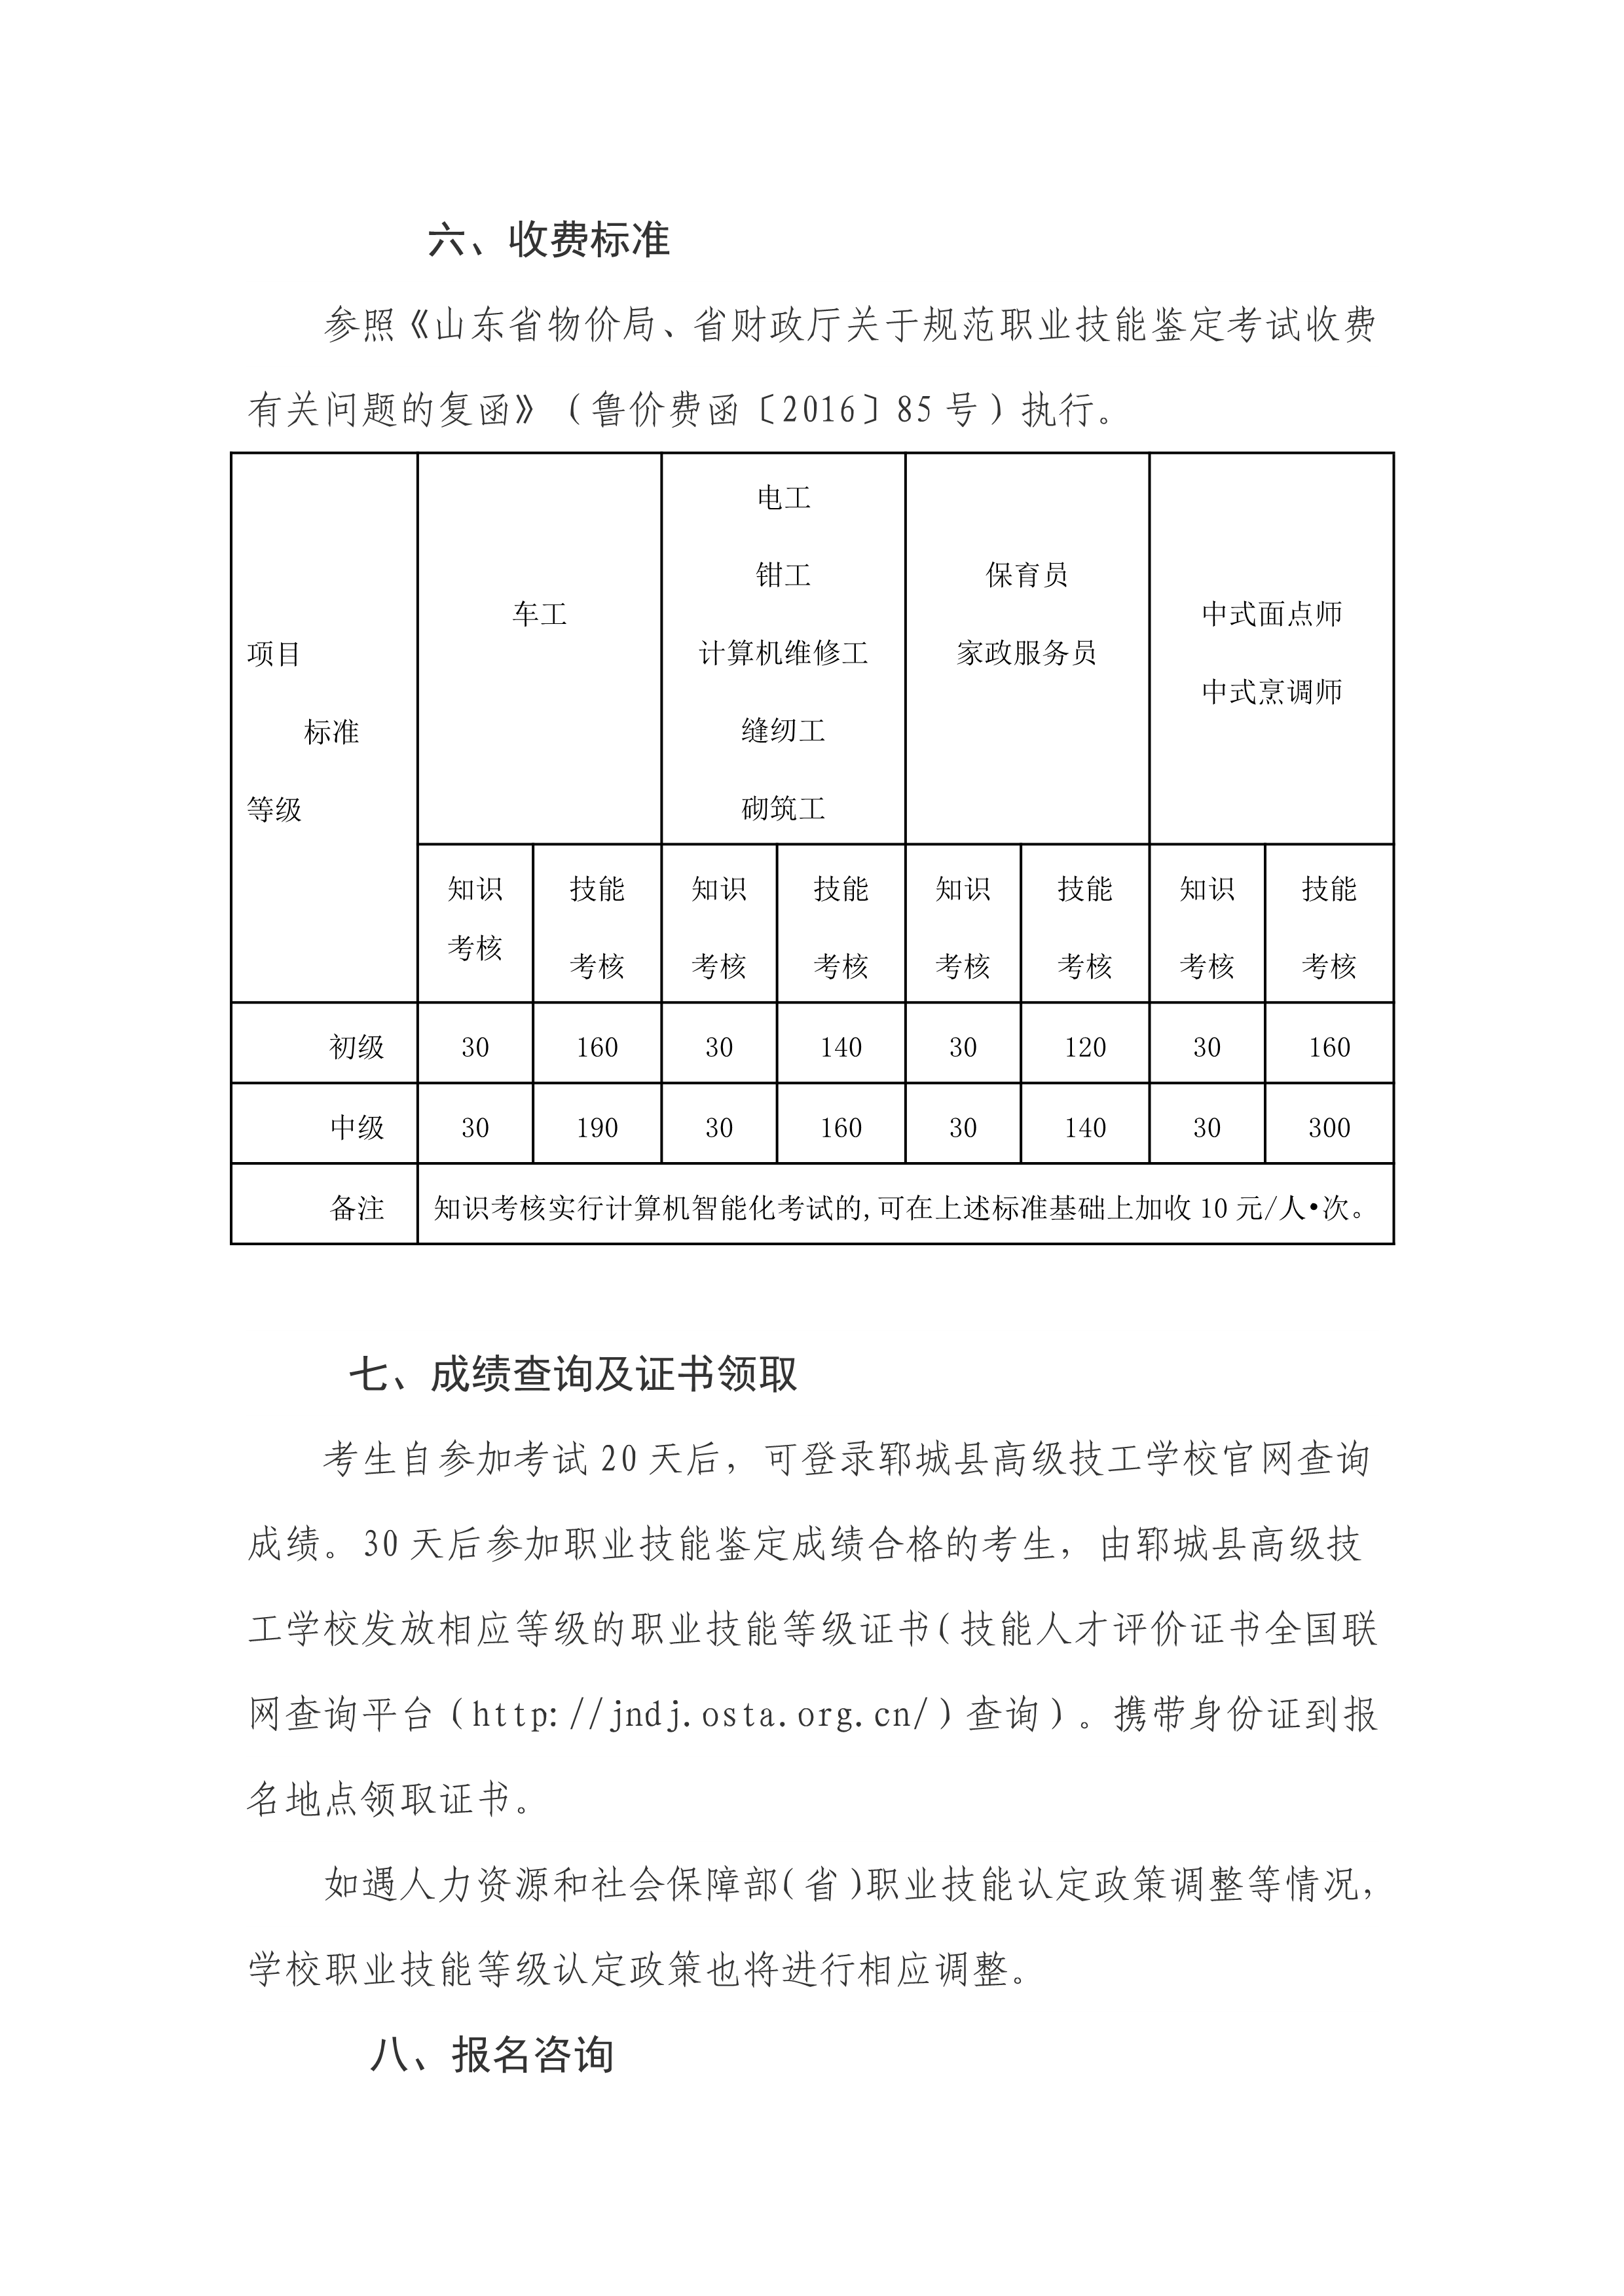 郓城县高级技工学校社会化等级认定计划-5.png